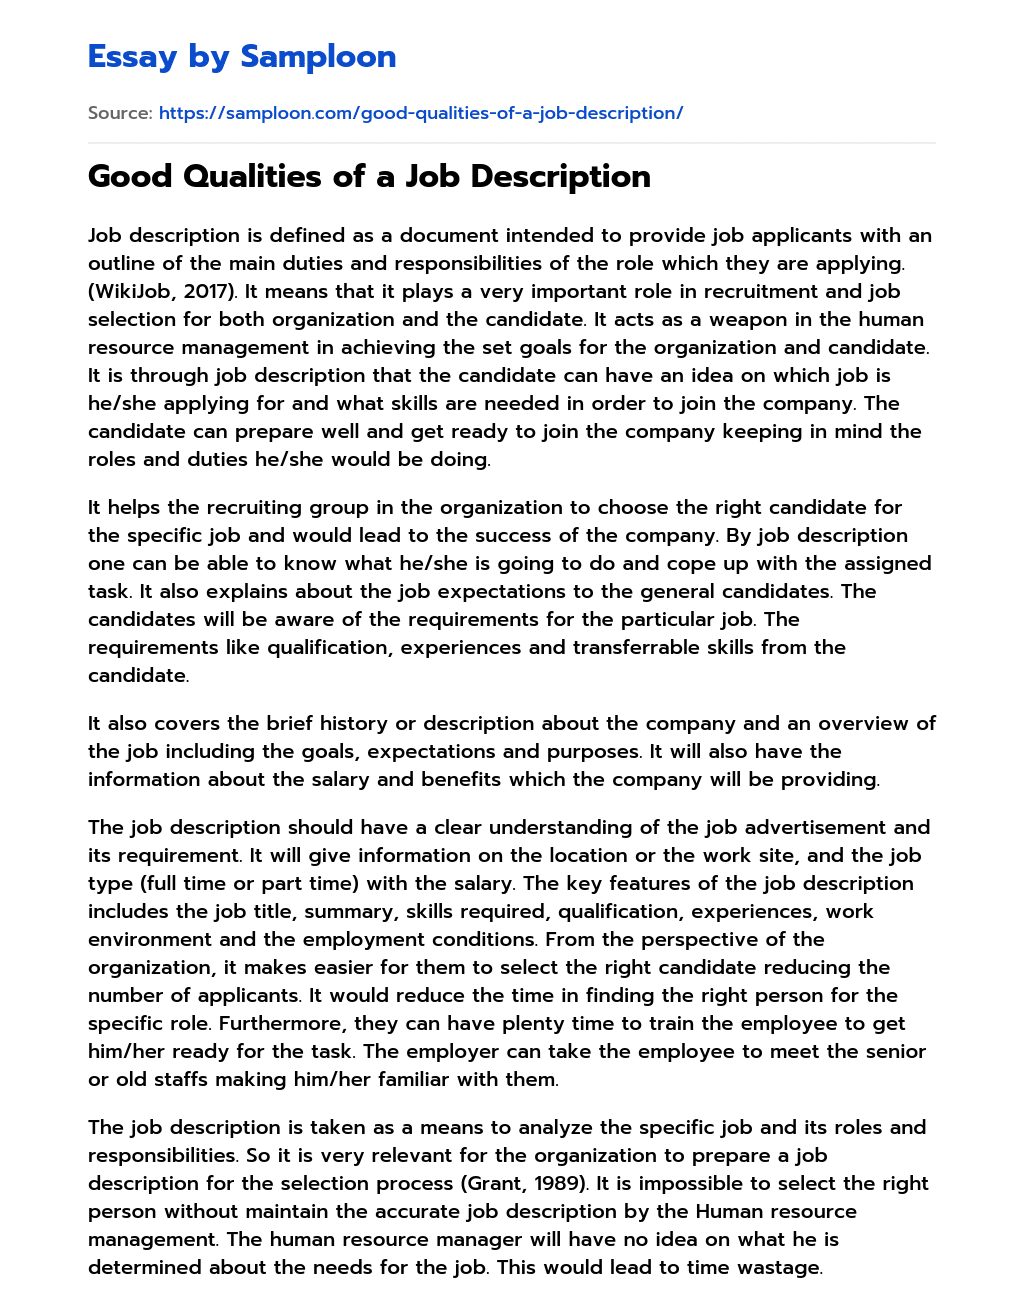 Good Qualities of a Job Description essay